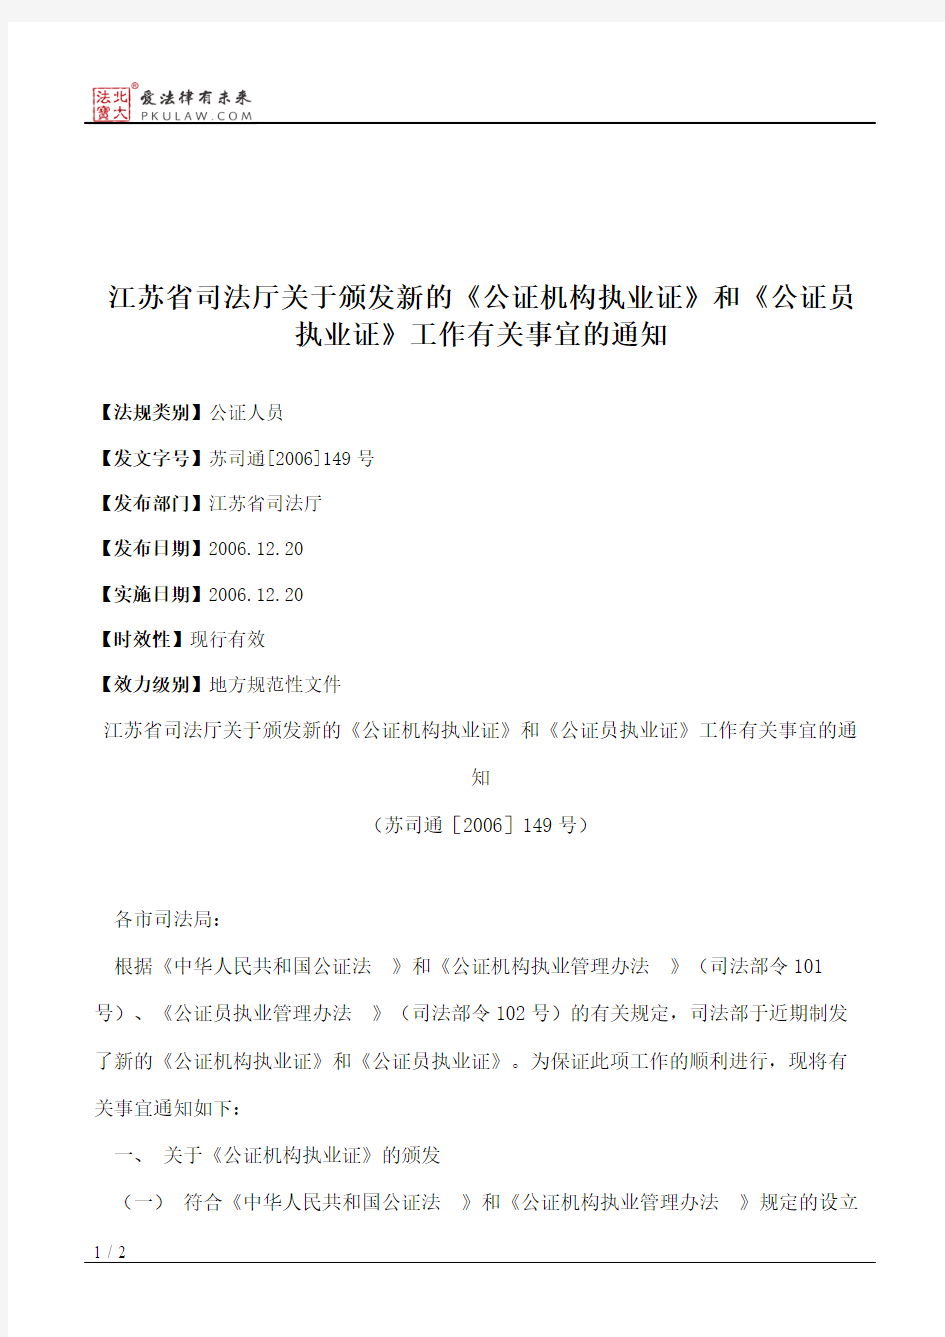 江苏省司法厅关于颁发新的《公证机构执业证》和《公证员执业证》